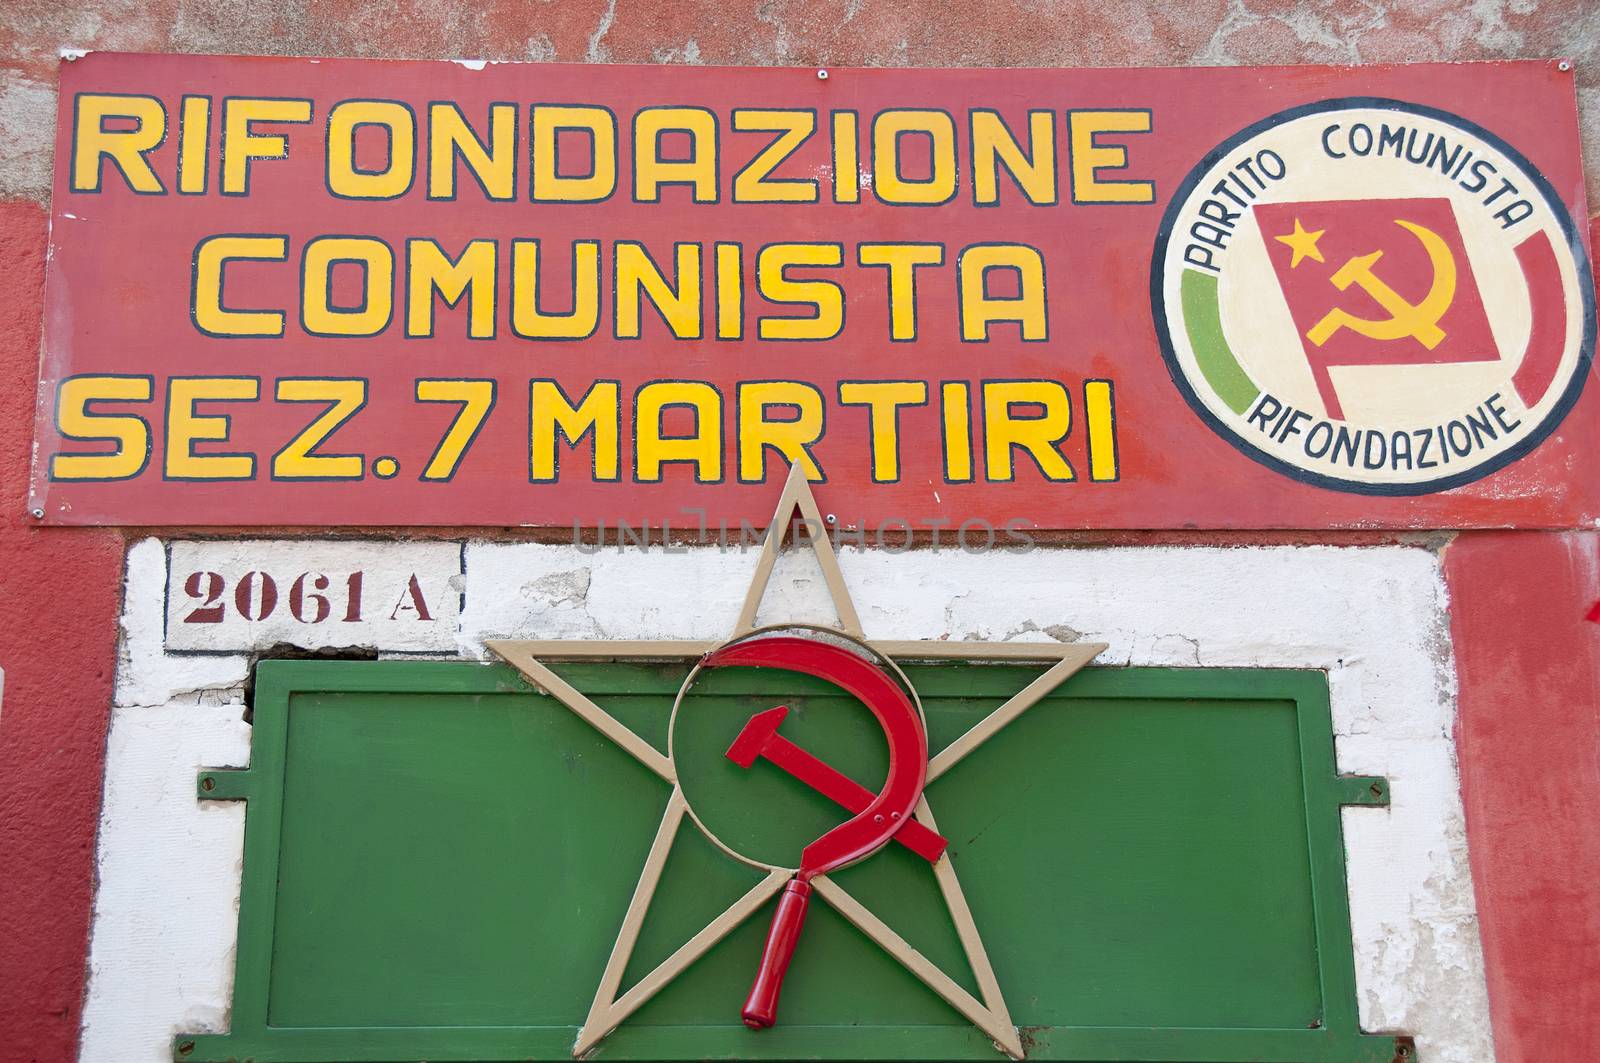 Venue Communist Party, Venice, Italy by jalonsohu@gmail.com